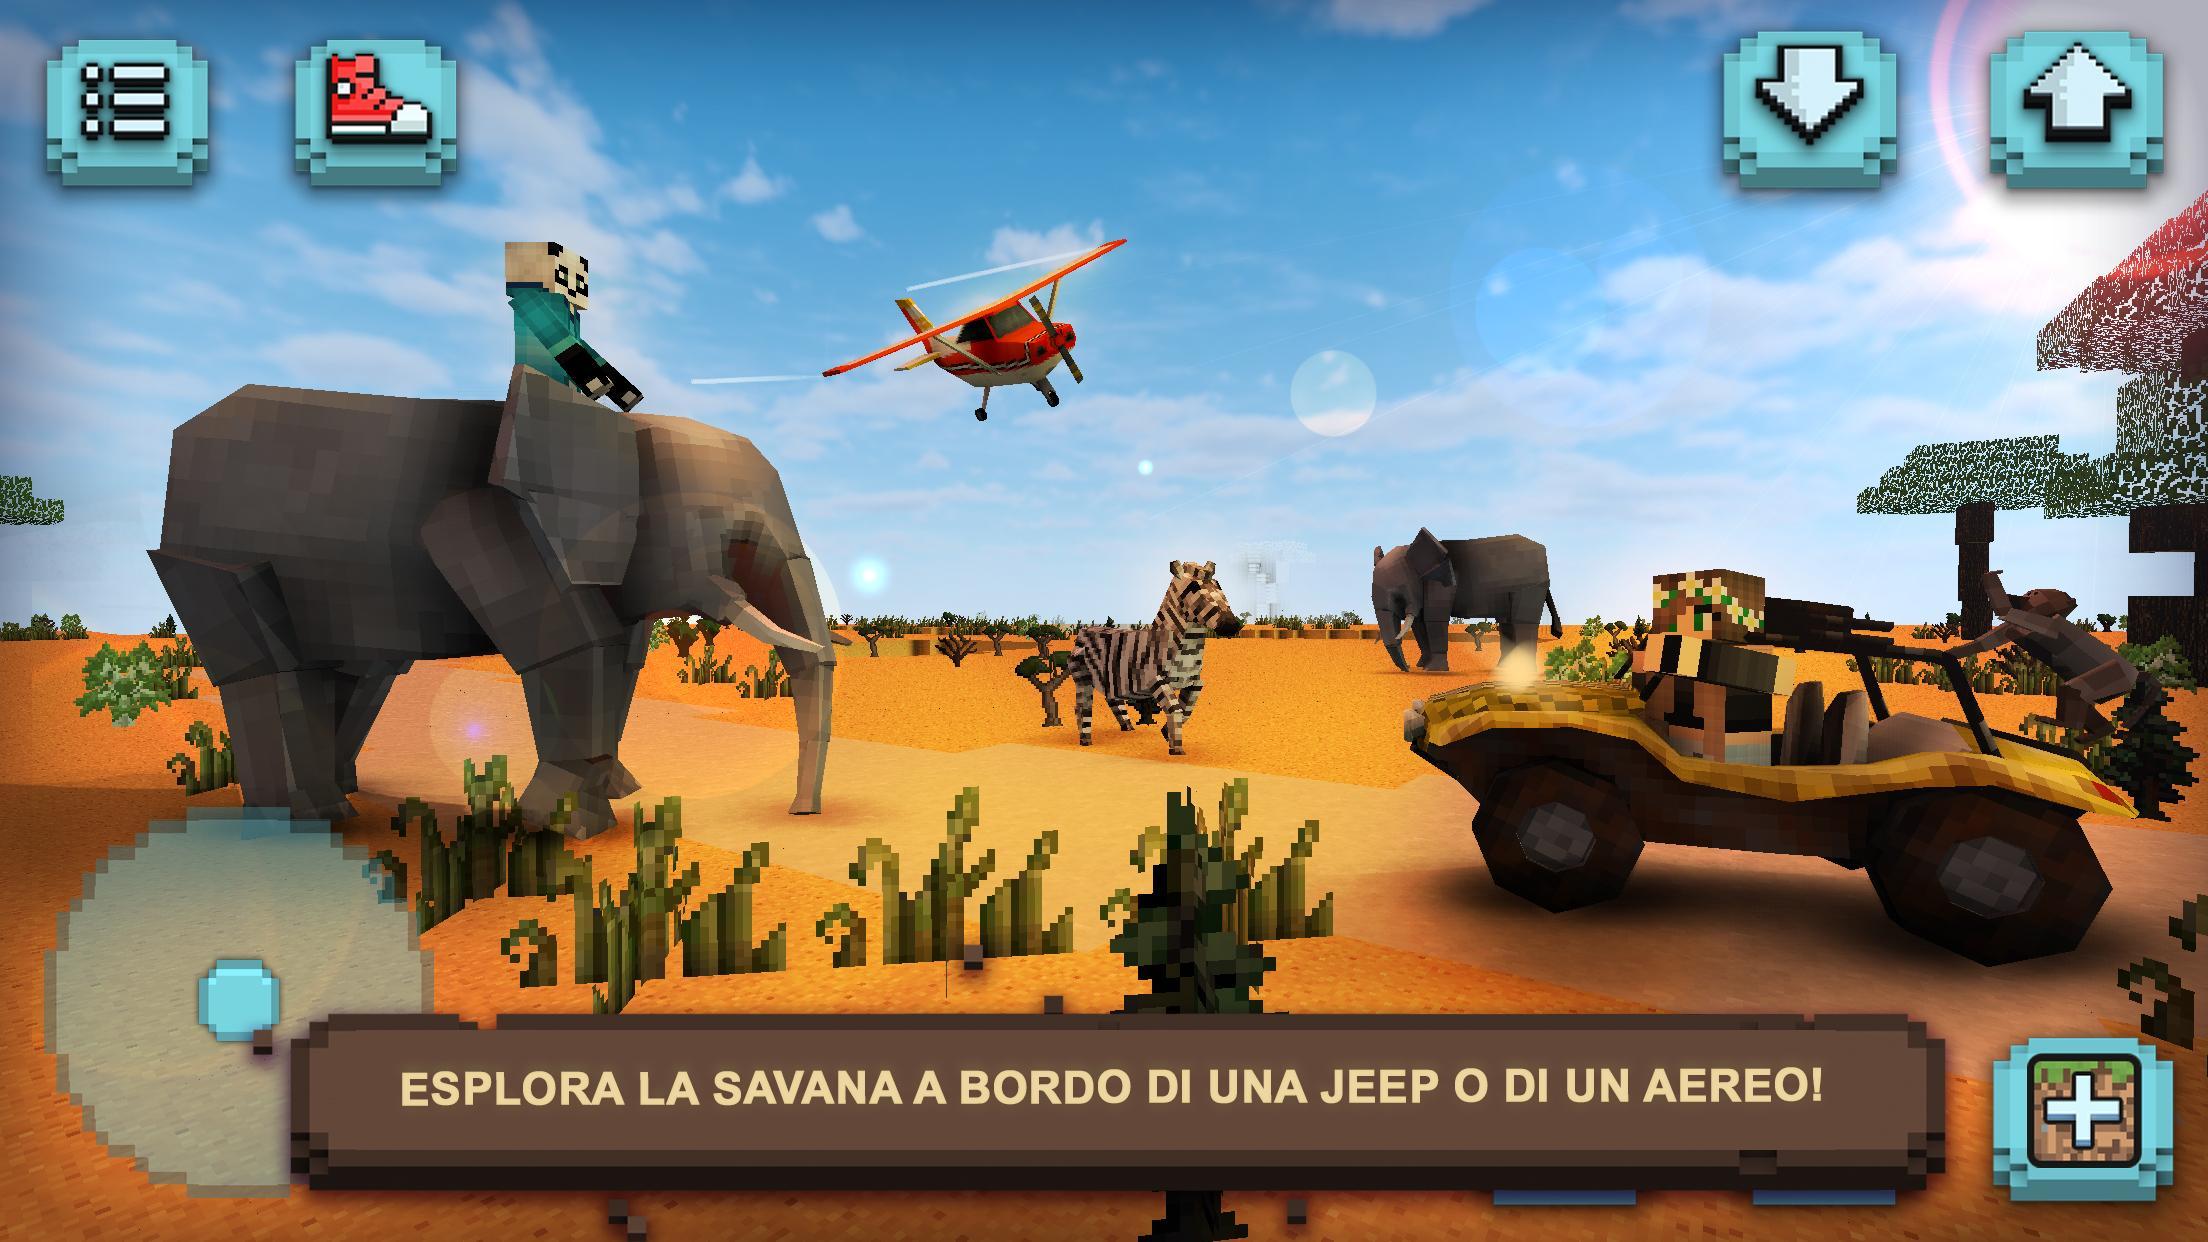 Screenshot 1 of Safari nella Savana Quadrata 1.14